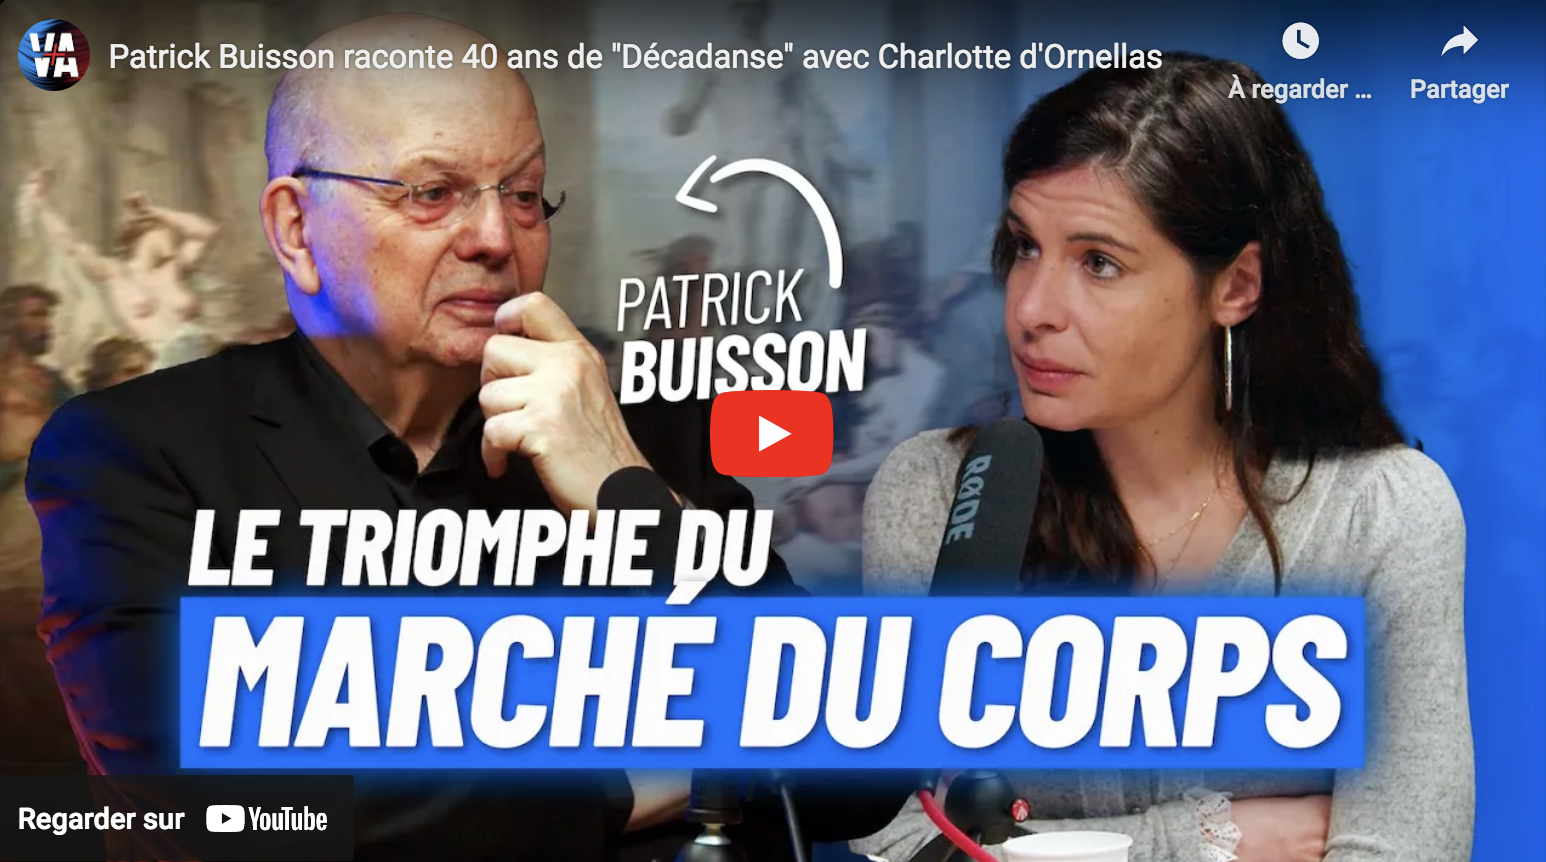 Patrick Buisson raconte 40 ans de “Décadanse” avec Charlotte d’Ornellas (VIDÉO)